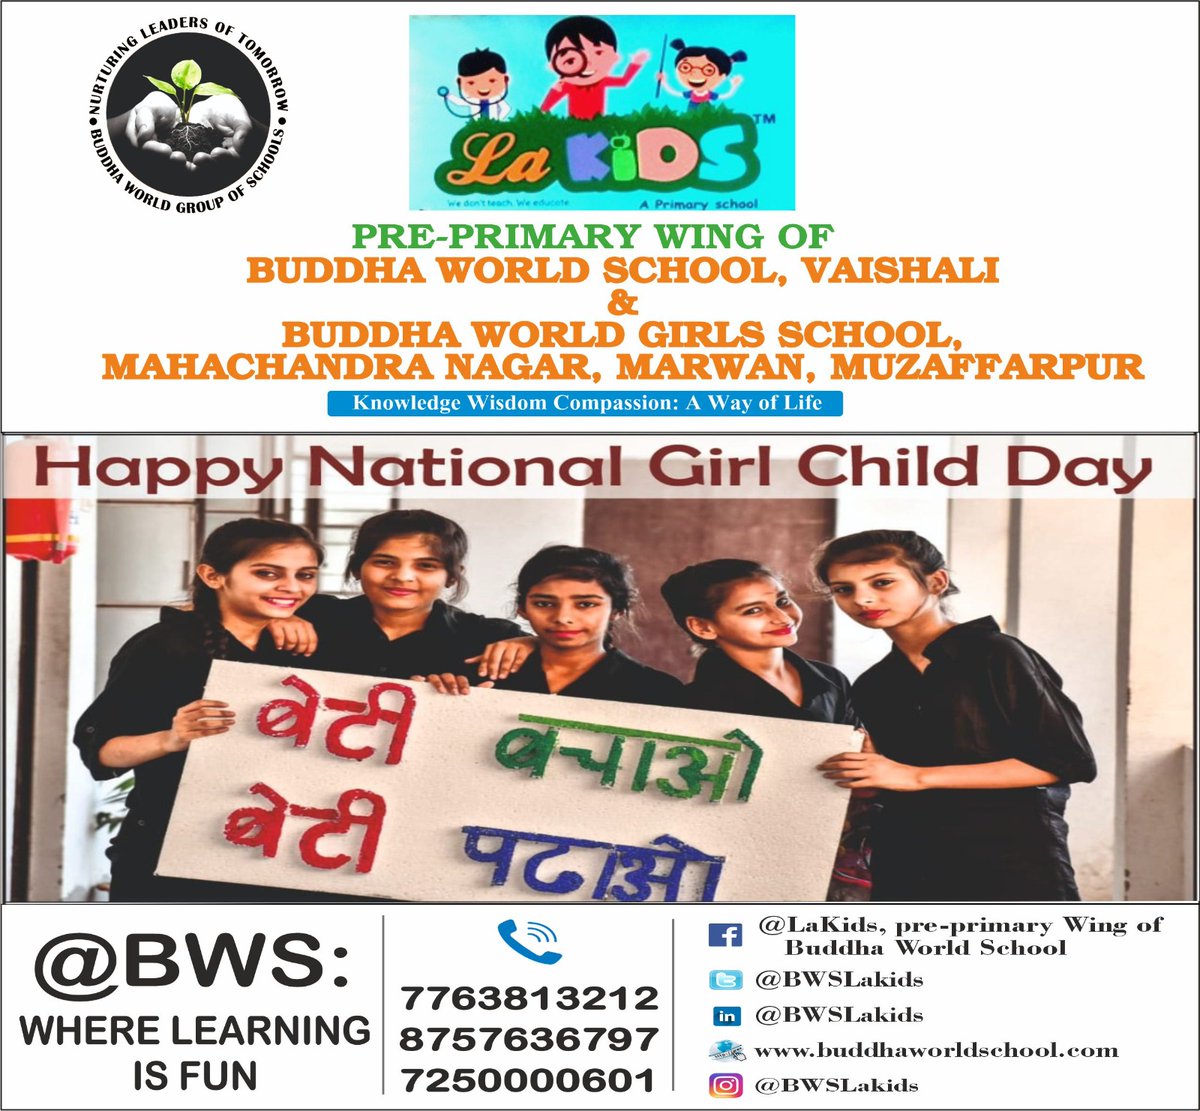 Happy National Girl Child Day!
#nationalgirlchildday #girlpower #girlchildday #childday #girlchildday2024 #bws #wherelearningisfun @sarikamalhotra2 @Krish_Vaishali @AnitaSi80209274